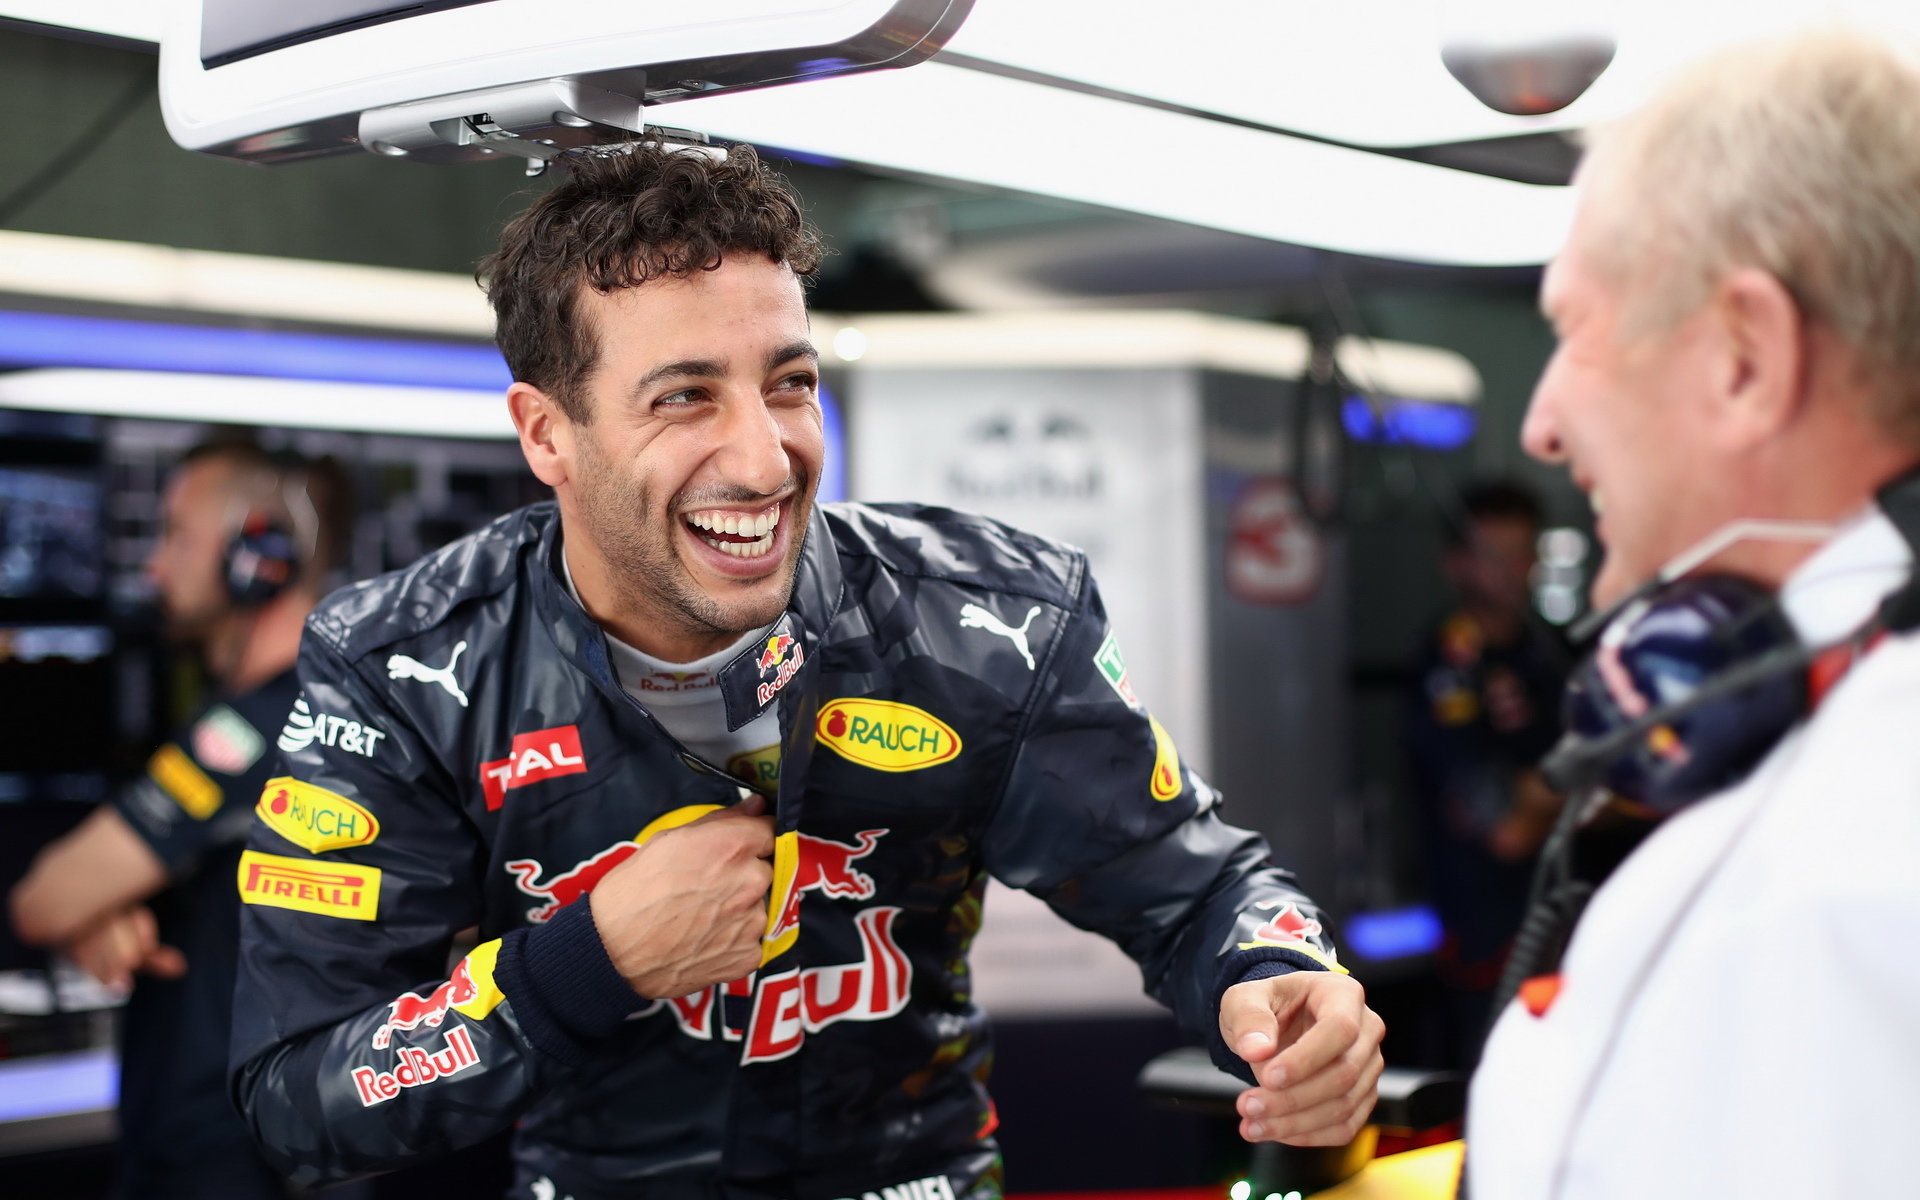 Daniel Ricciardo v závodě moc důvodů k úsměvu neměl - špatná strategie a penalizace zhatily jeho šance